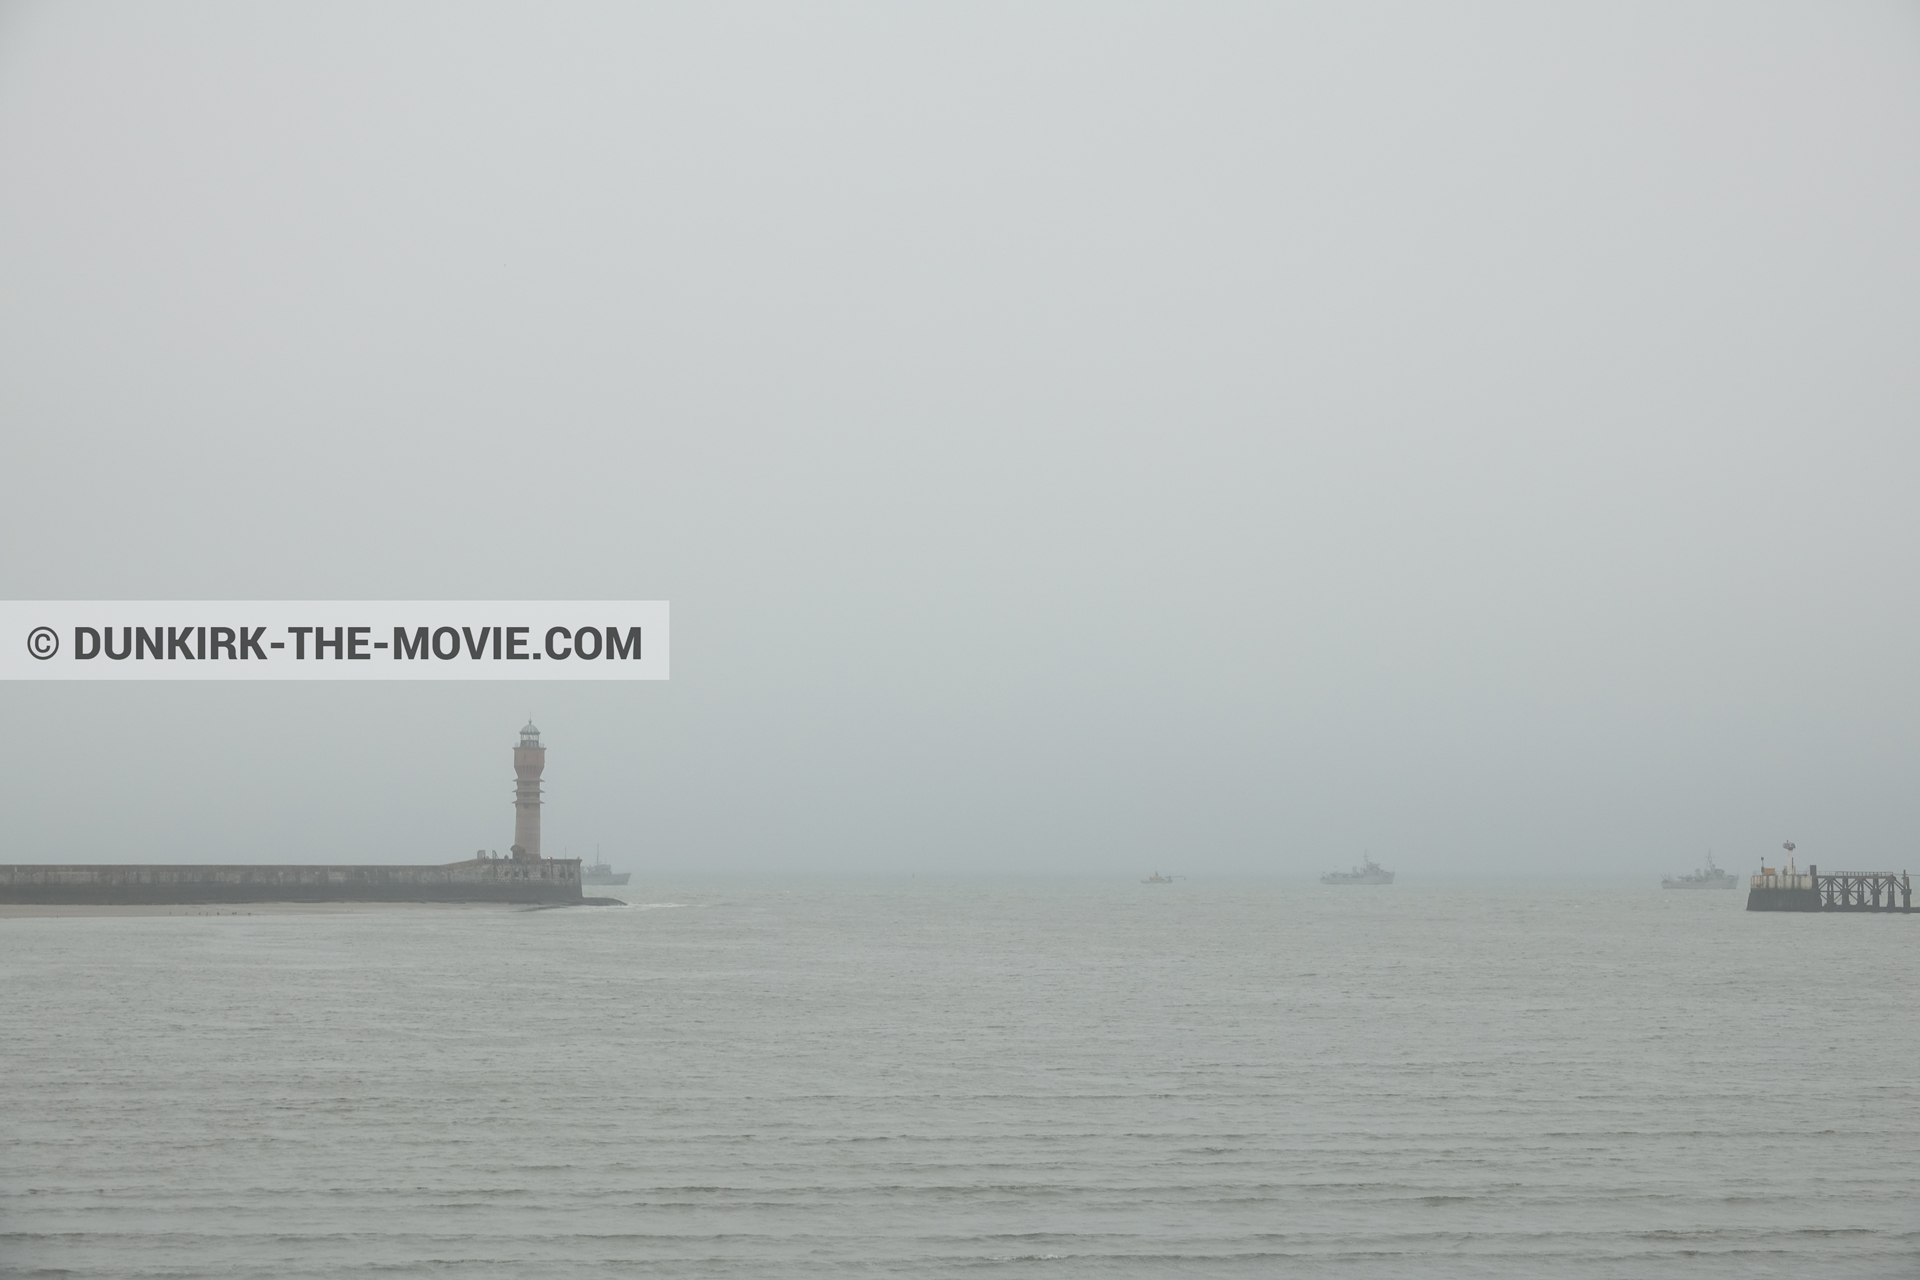 Fotos con cielo gris, mares calma, faro de Saint-Pol-sur-Mer,  durante el rodaje de la película Dunkerque de Nolan